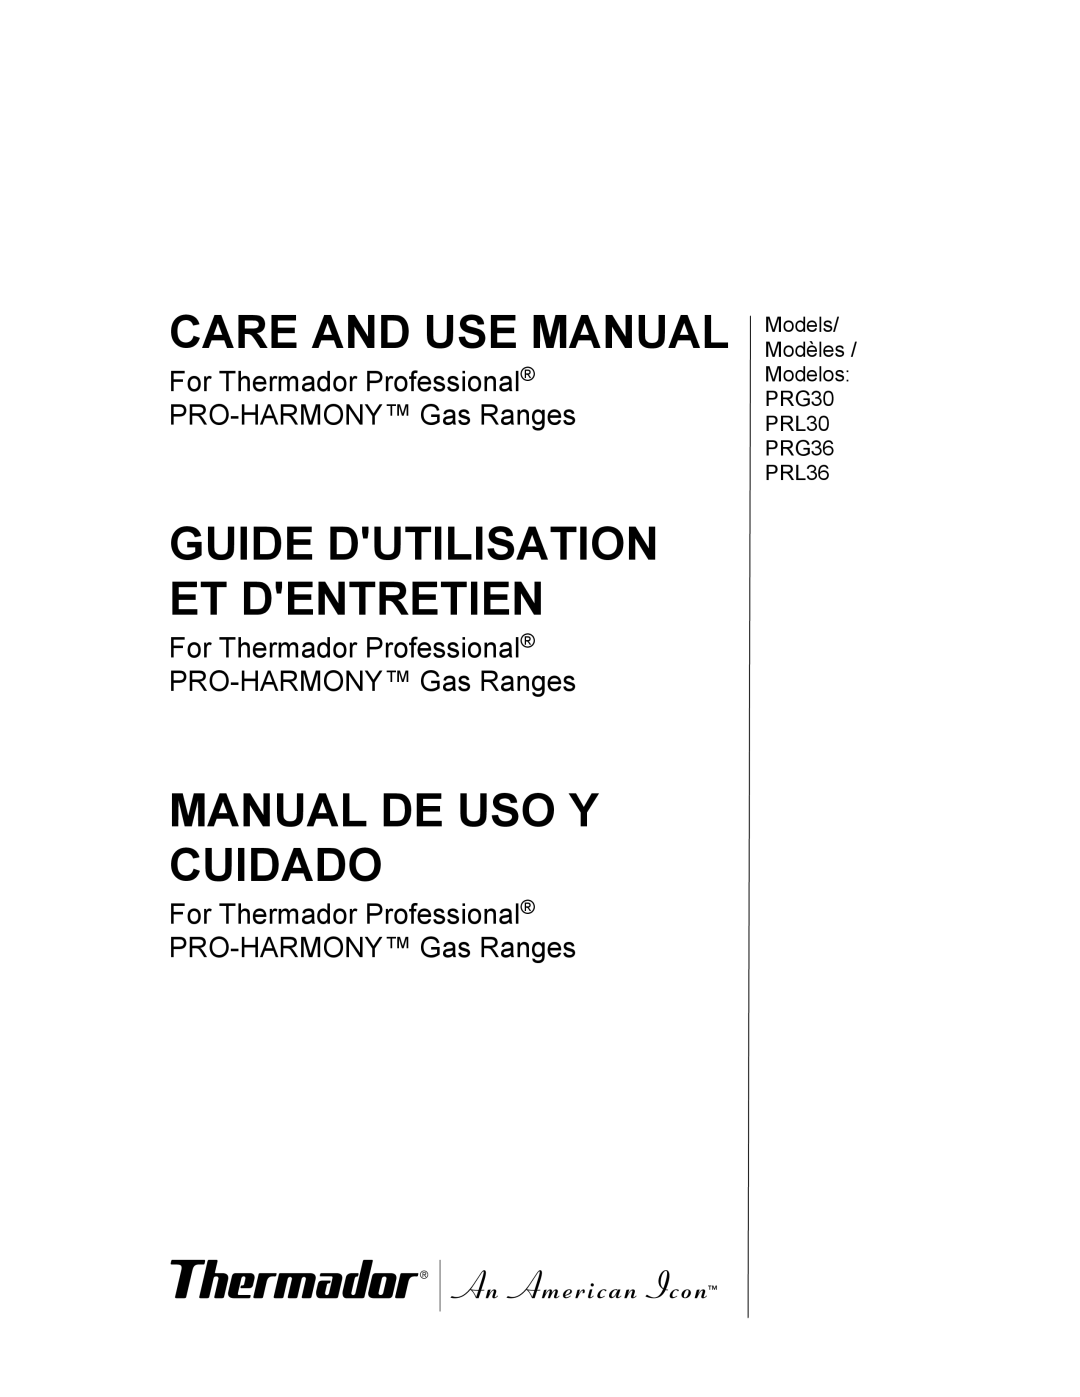 Thermador PRG36, PRG30 manual Care And Use Manual, Manuel D’Utilisation Et D’Entretien 